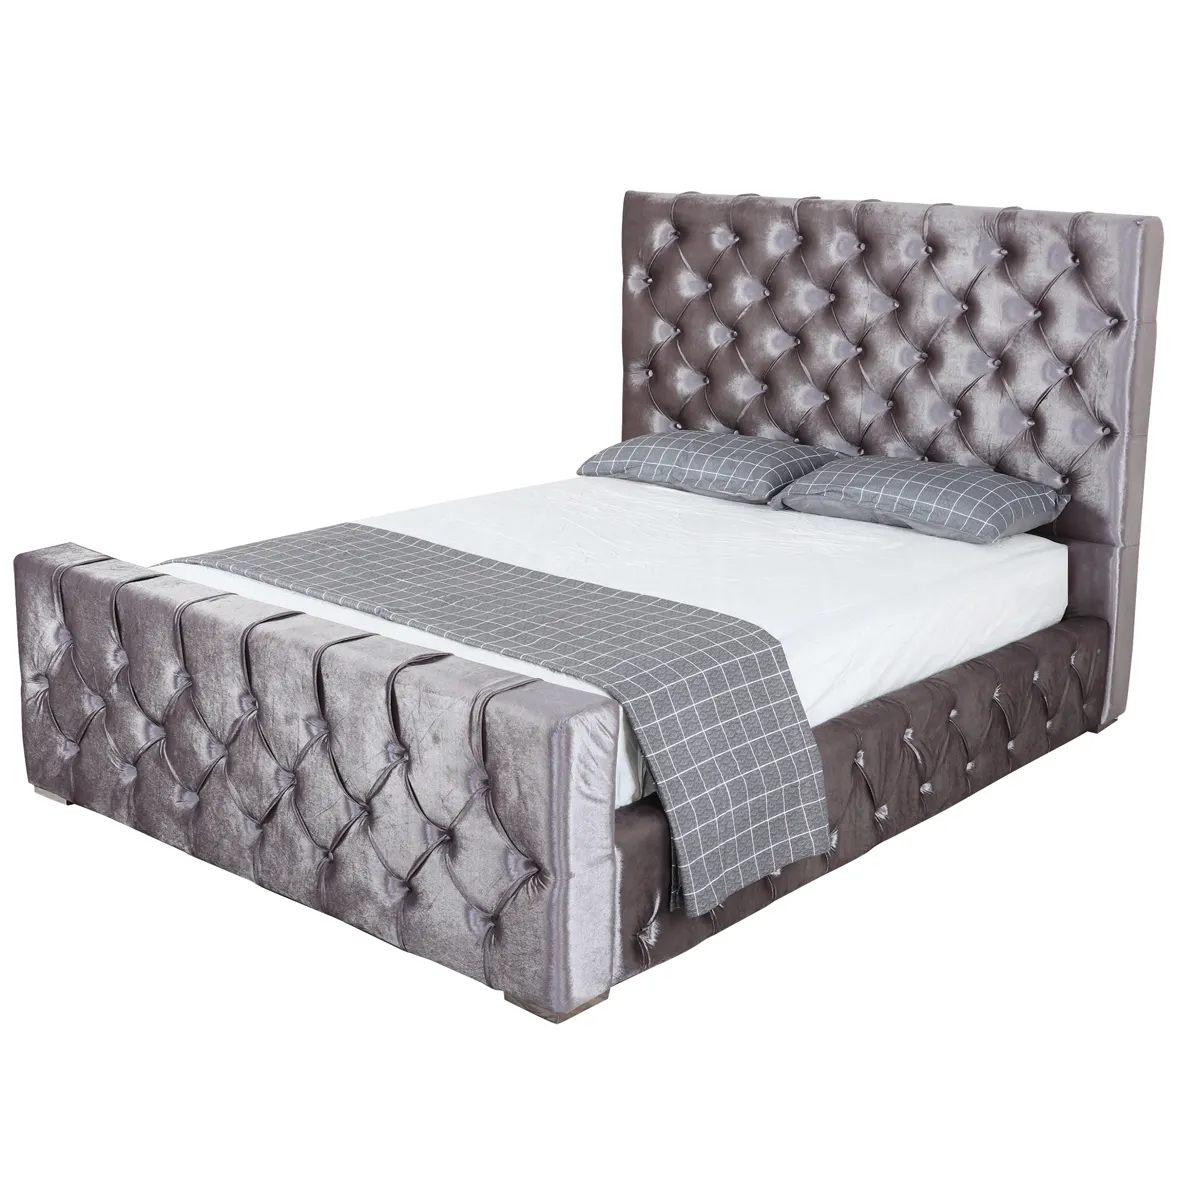 Último diseño cama Europa diseño moderno juego de dormitorio antiguo de madera maciza dormitorio trineo cama cabecero almacenamiento elevador de gas cama de PU